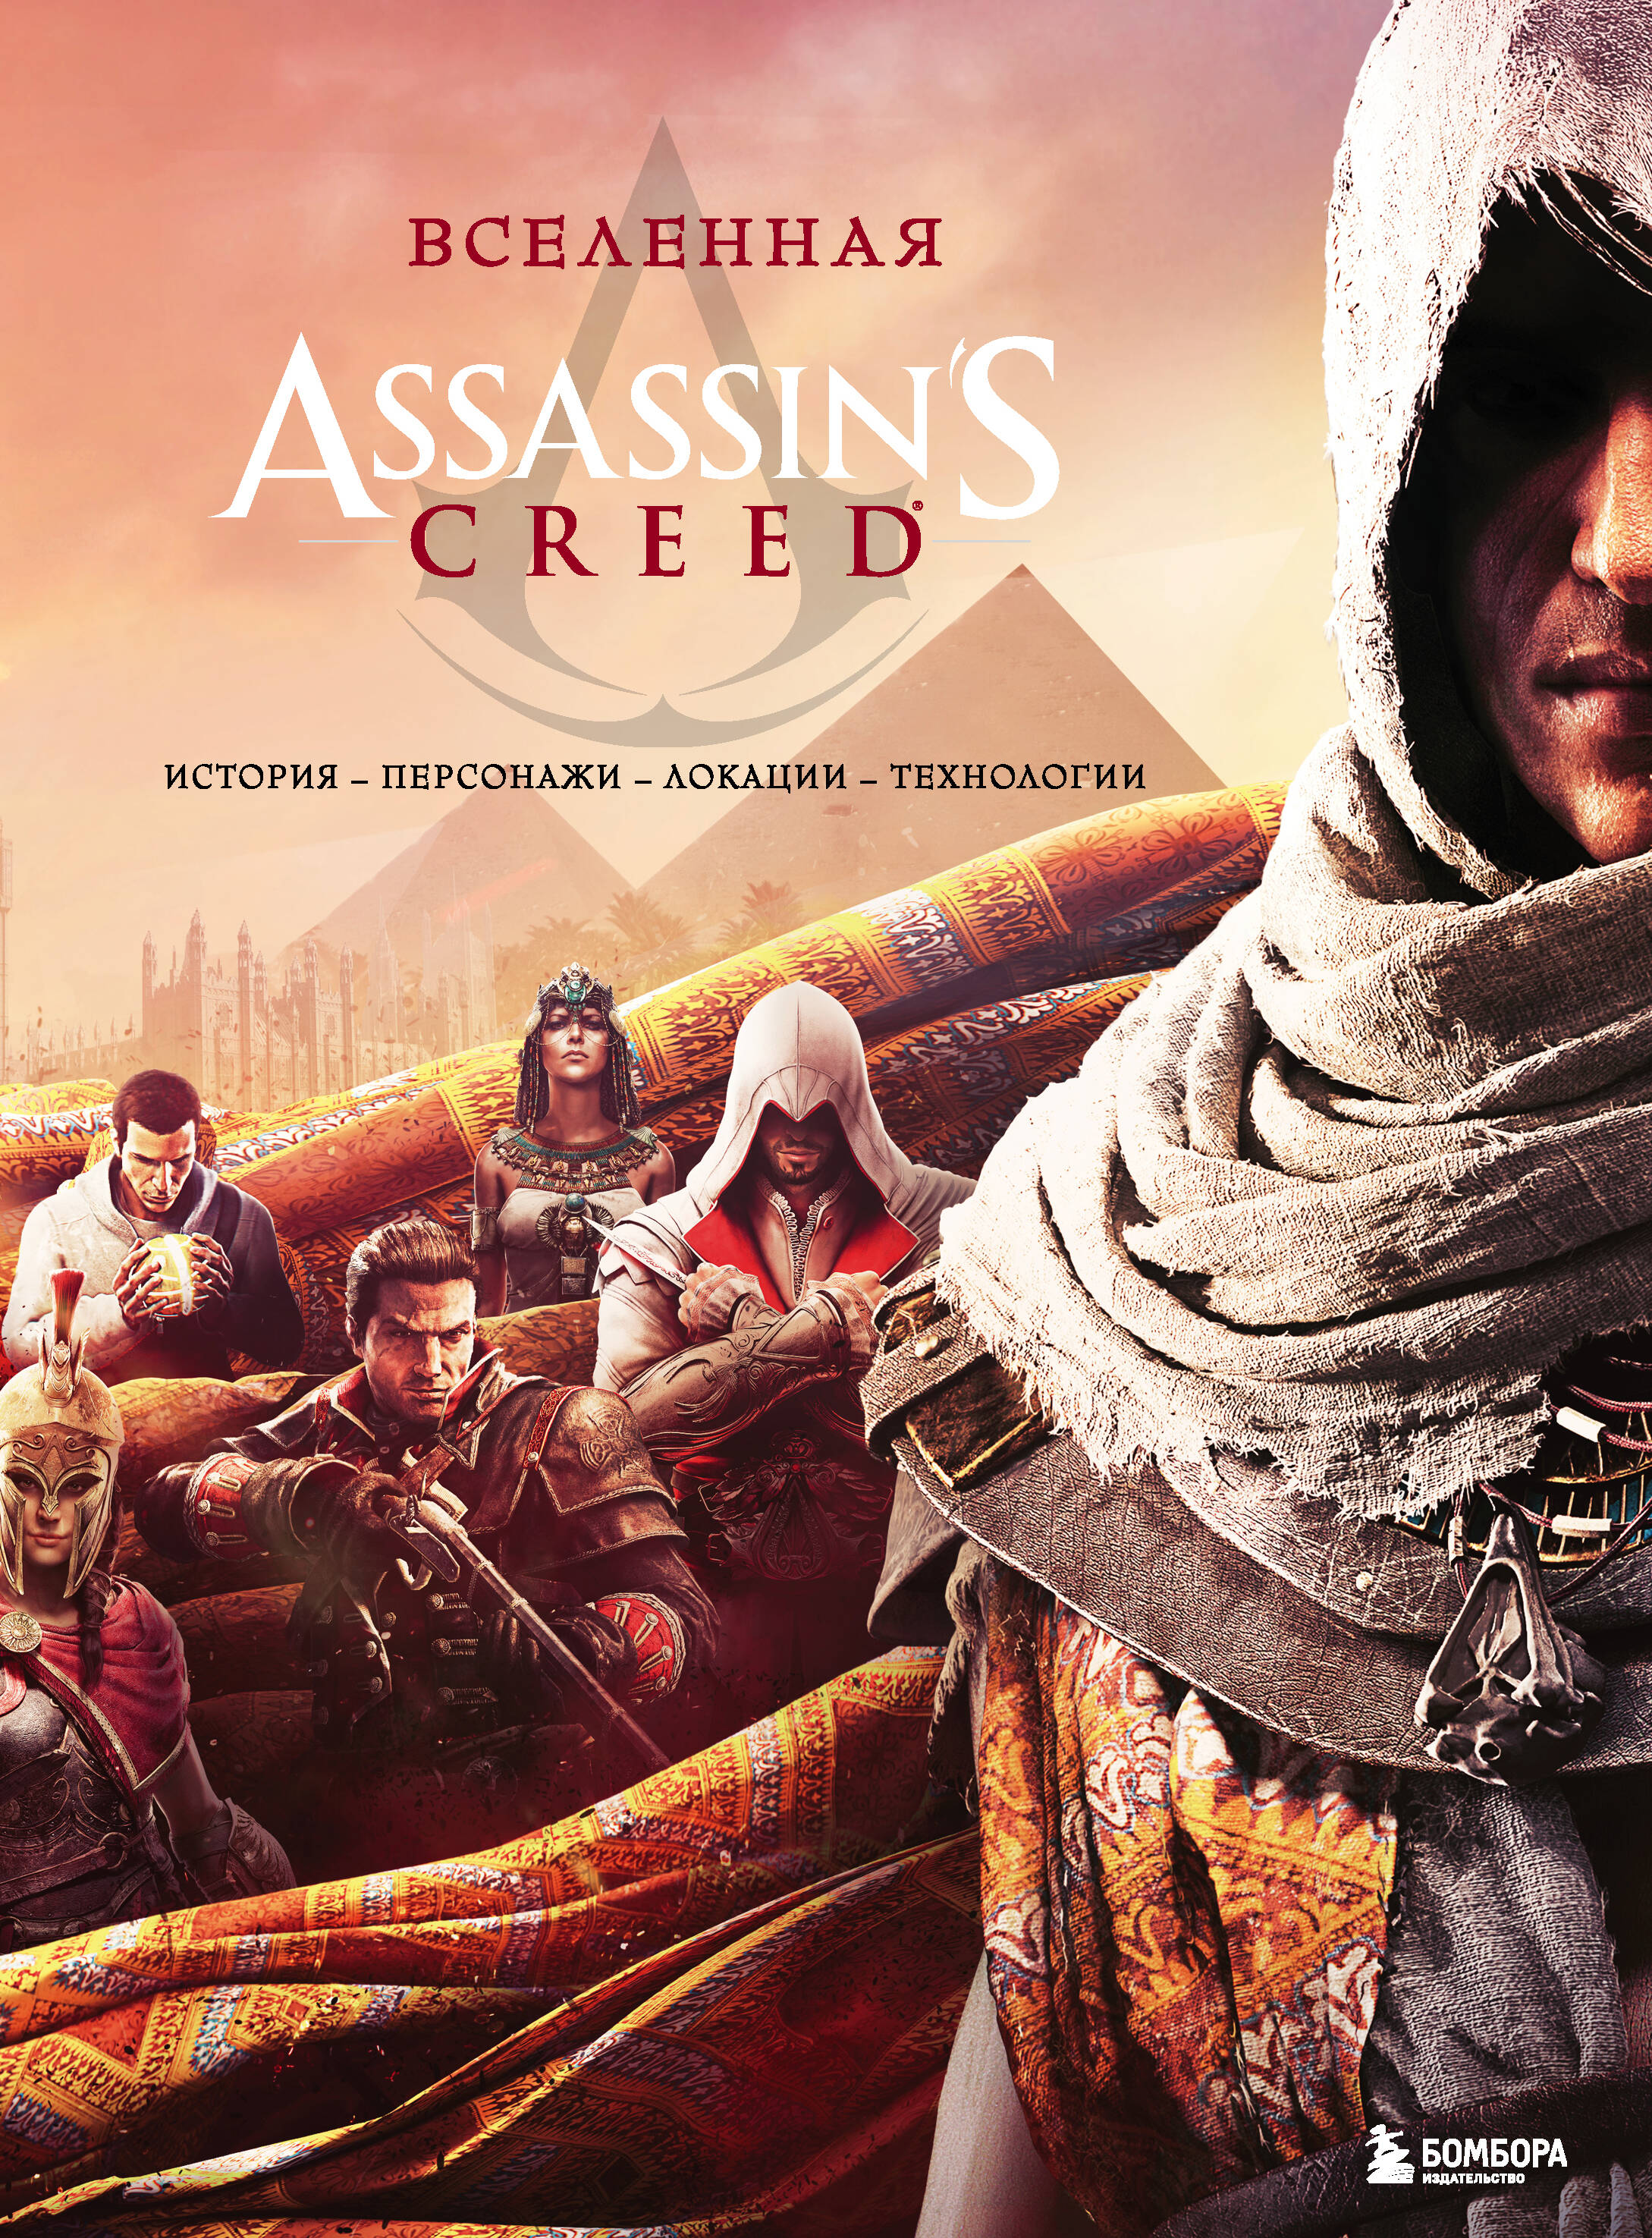 Вселенная Assassins Creed: история, персонажи, локации, технологии assassins creed истоки gold edition